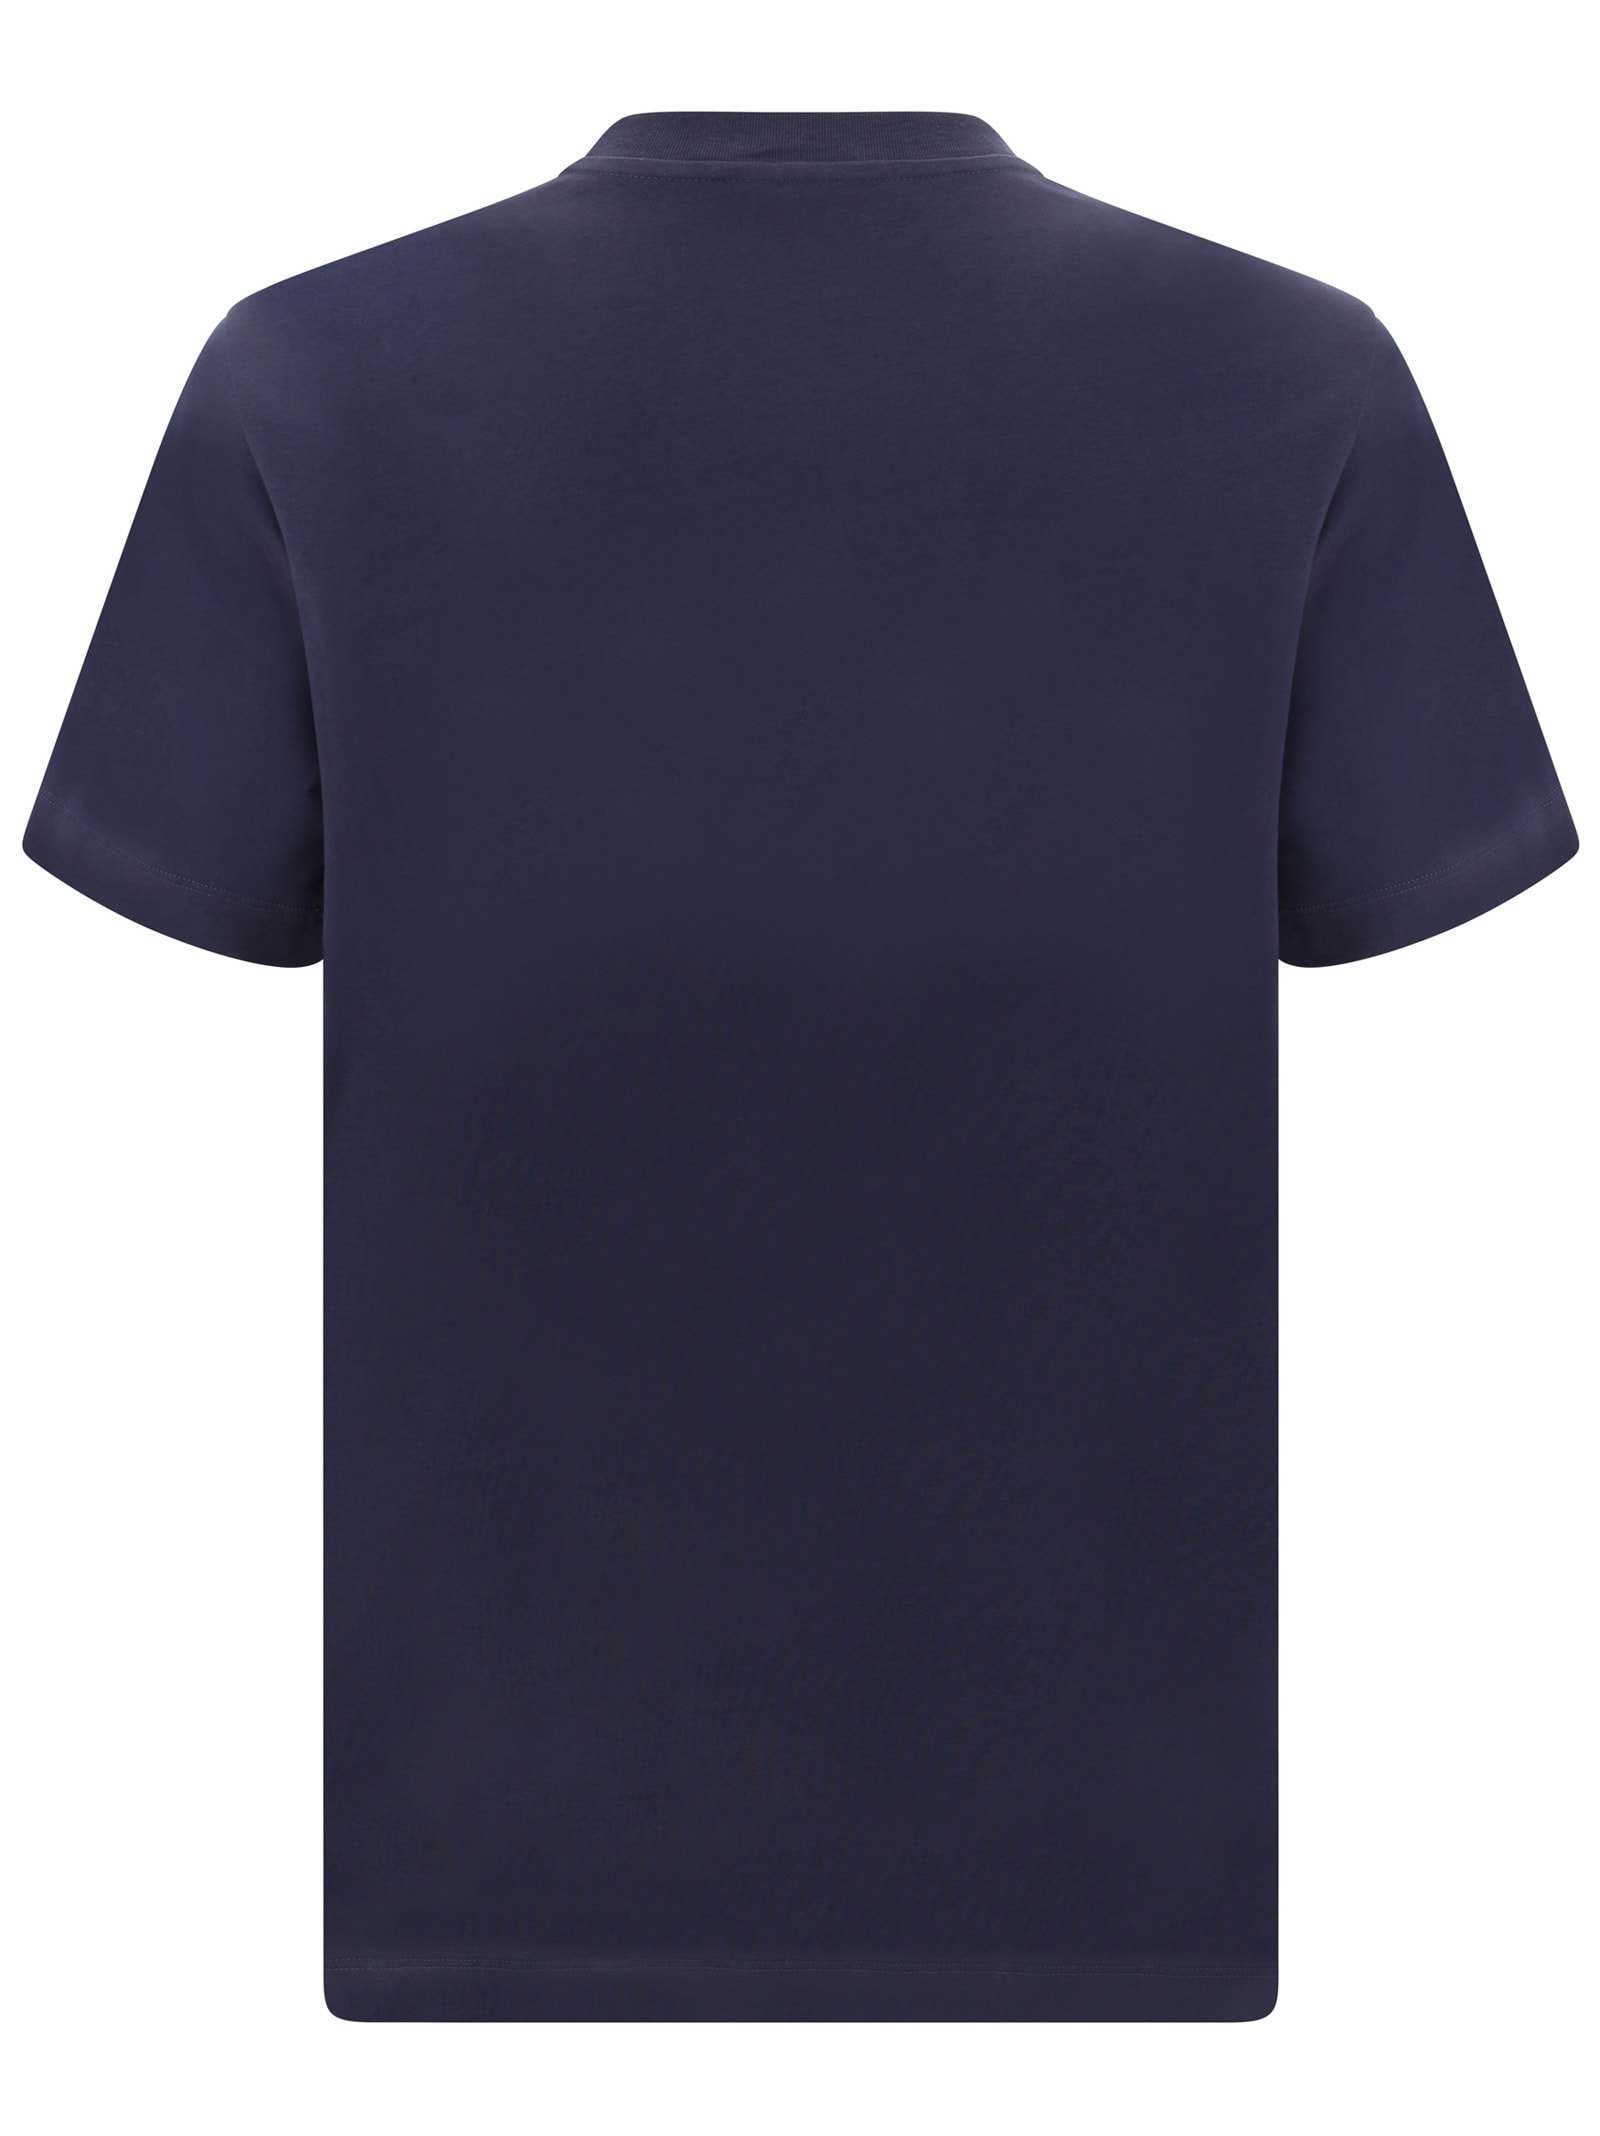 Shop Marni T-shirt In Blu